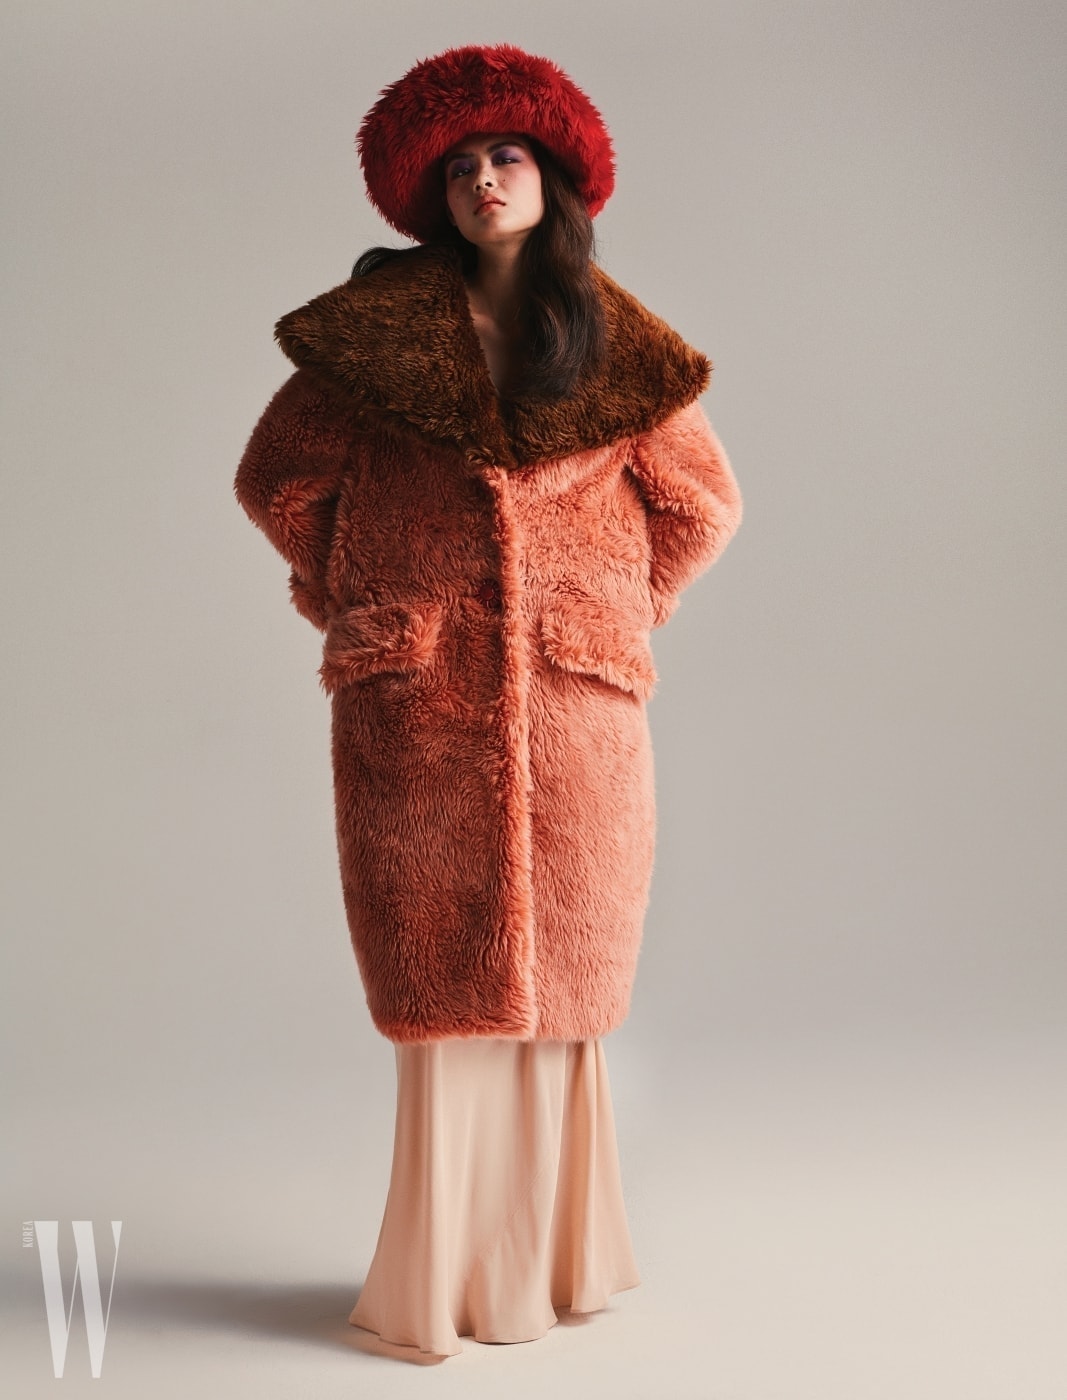 페이크 퍼 모자와 코트, 살구색 드레스는 미우미우 제품.